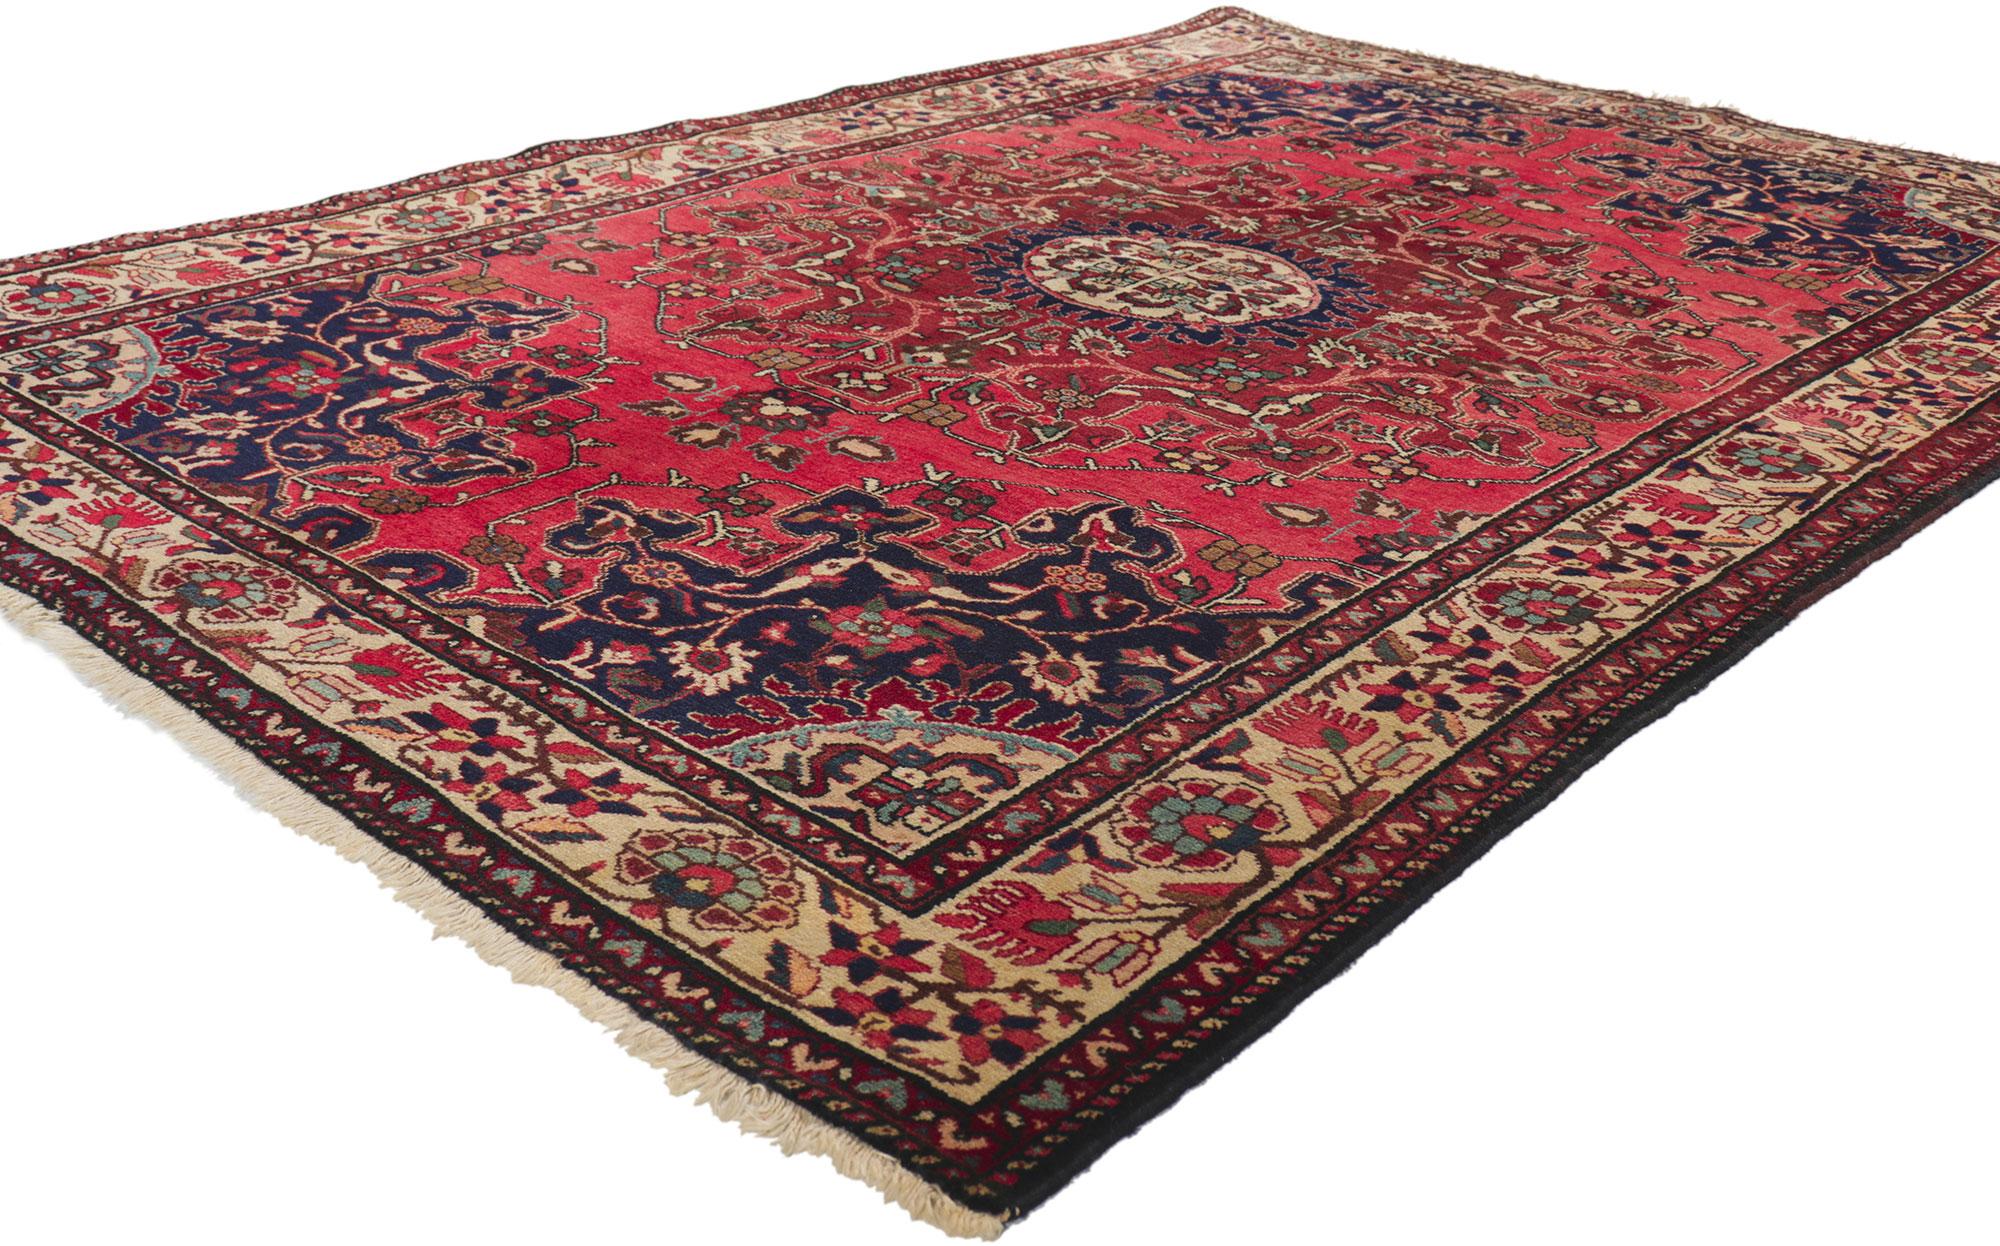 77158 Vintage Persian Hamadan Rug 04'06 x 06'09. 
Dieser handgeknüpfte persische Hamadan-Teppich aus Wolle im traditionellen Stil mit unglaublichen Details und Texturen ist eine fesselnde Vision gewebter Schönheit. Das filigrane botanische Design